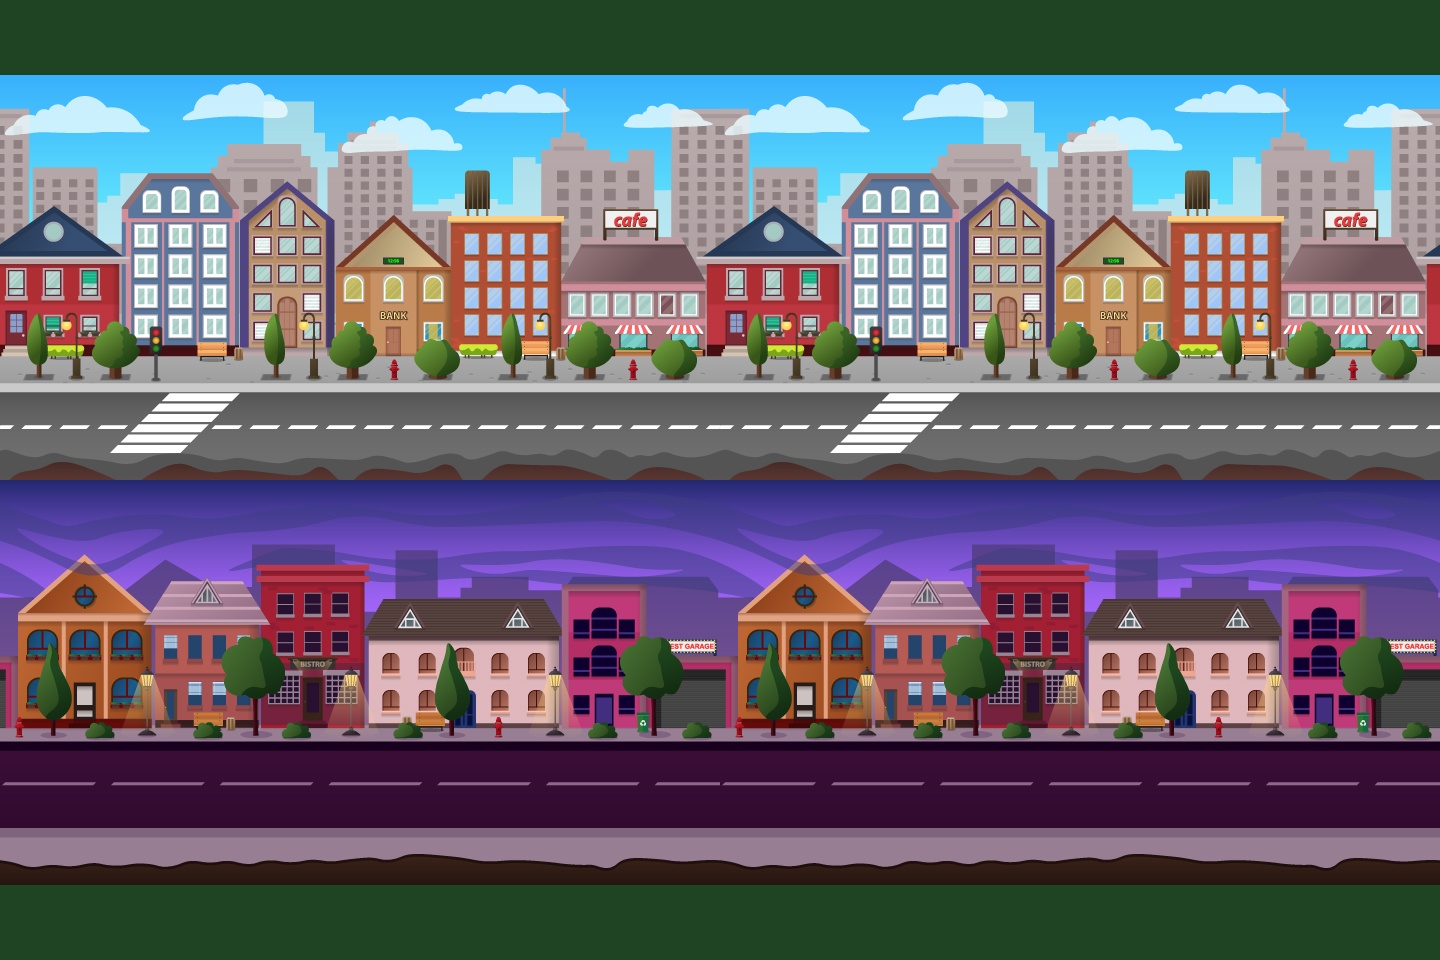 Cảnh nền trò chơi thành phố Parallax Scrolling trên CraftPix.net sẽ khiến người xem phải ngạc nhiên với hiệu ứng chuyển động đầy sống động. Mọi chi tiết của thành phố được tạo ra một cách tinh sảo và bắt mắt.